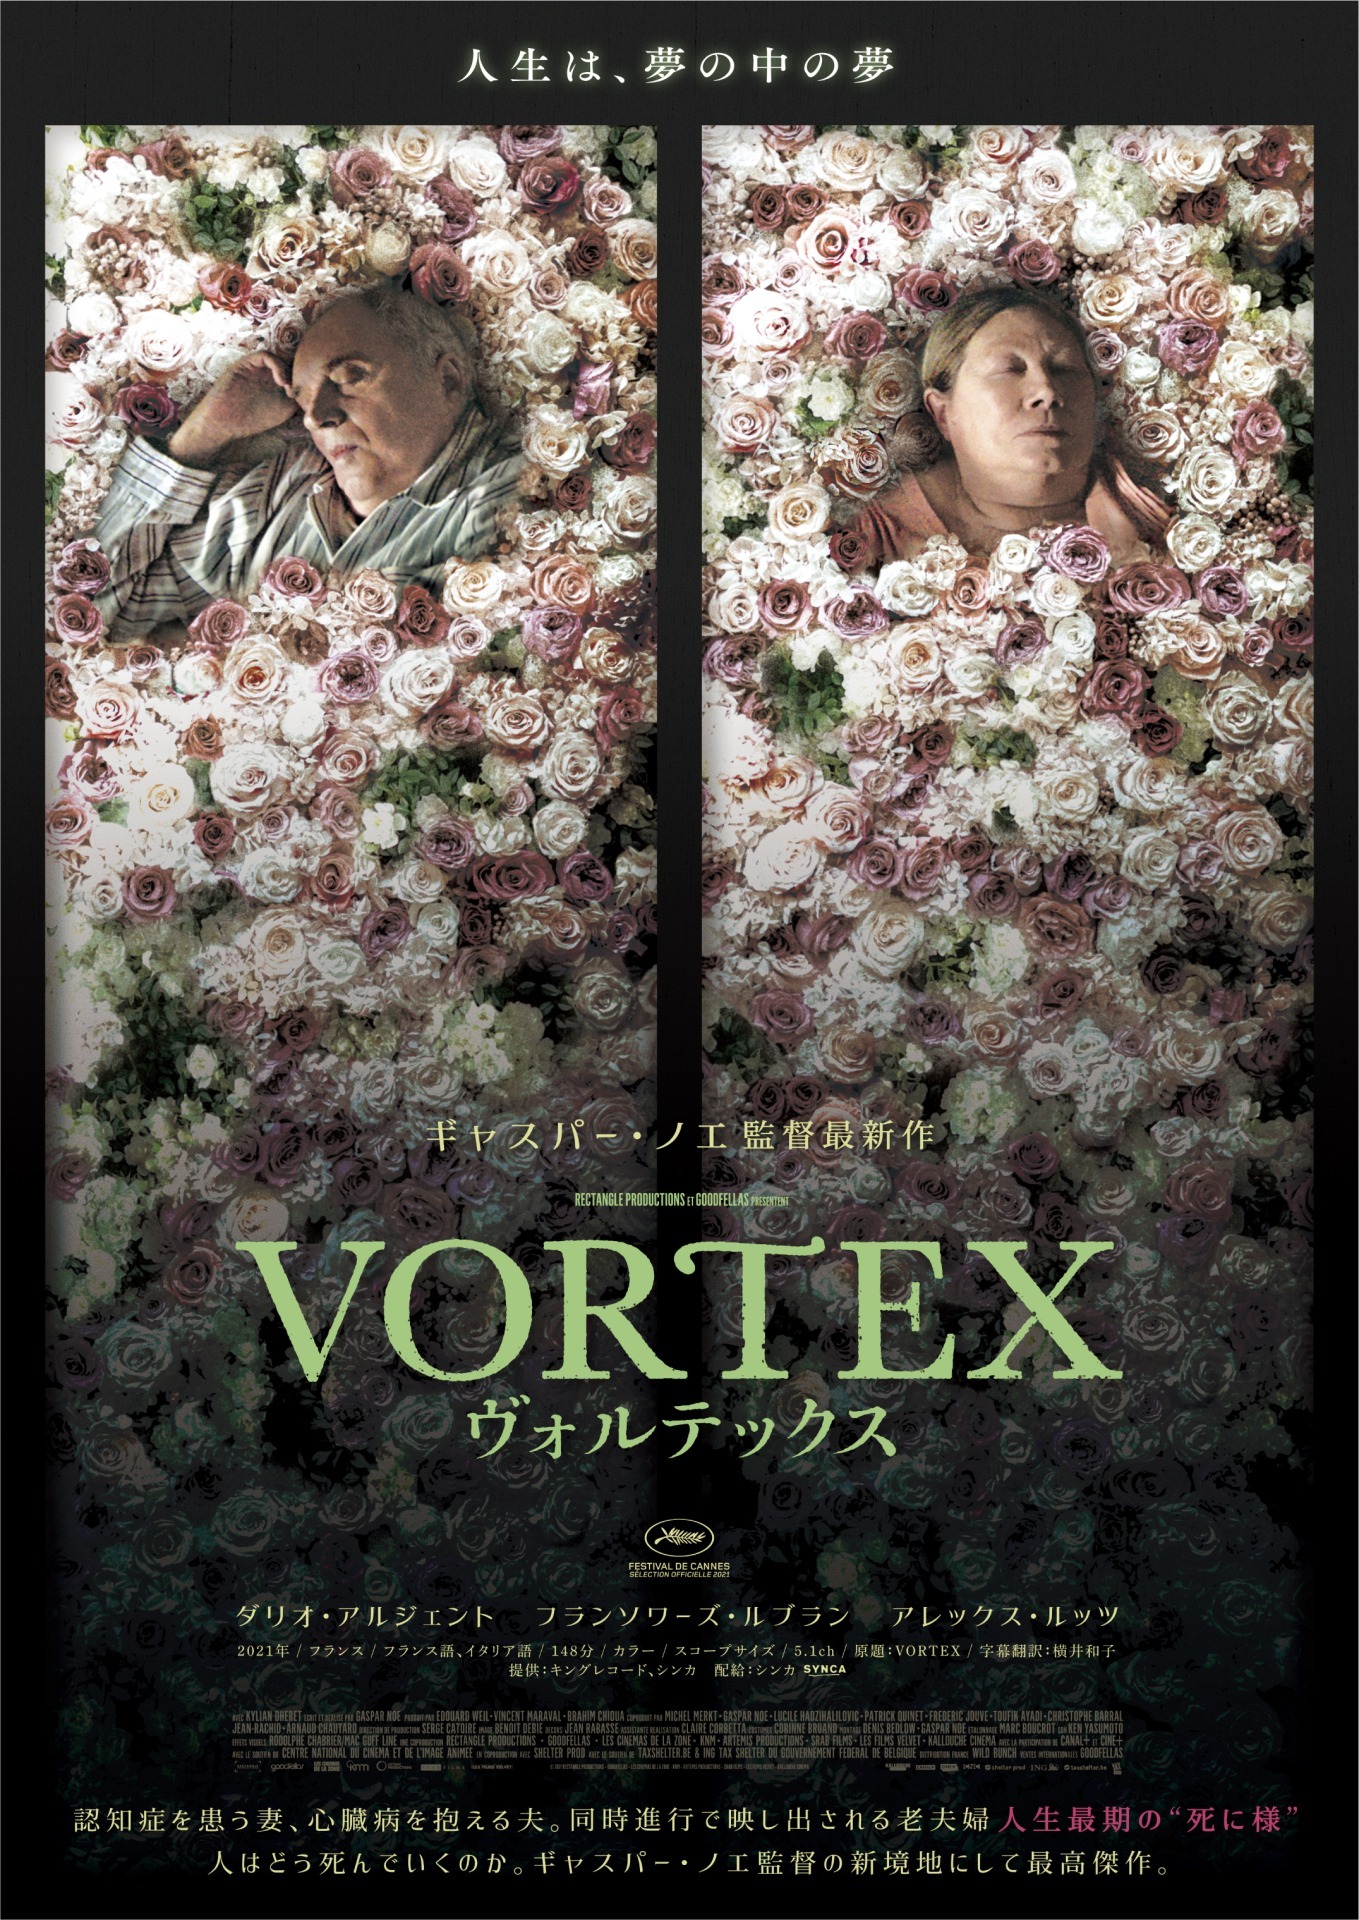 ギャスパー・ノエ監督がダリオ・アルジェント主演で老夫婦描く『VORTEX 